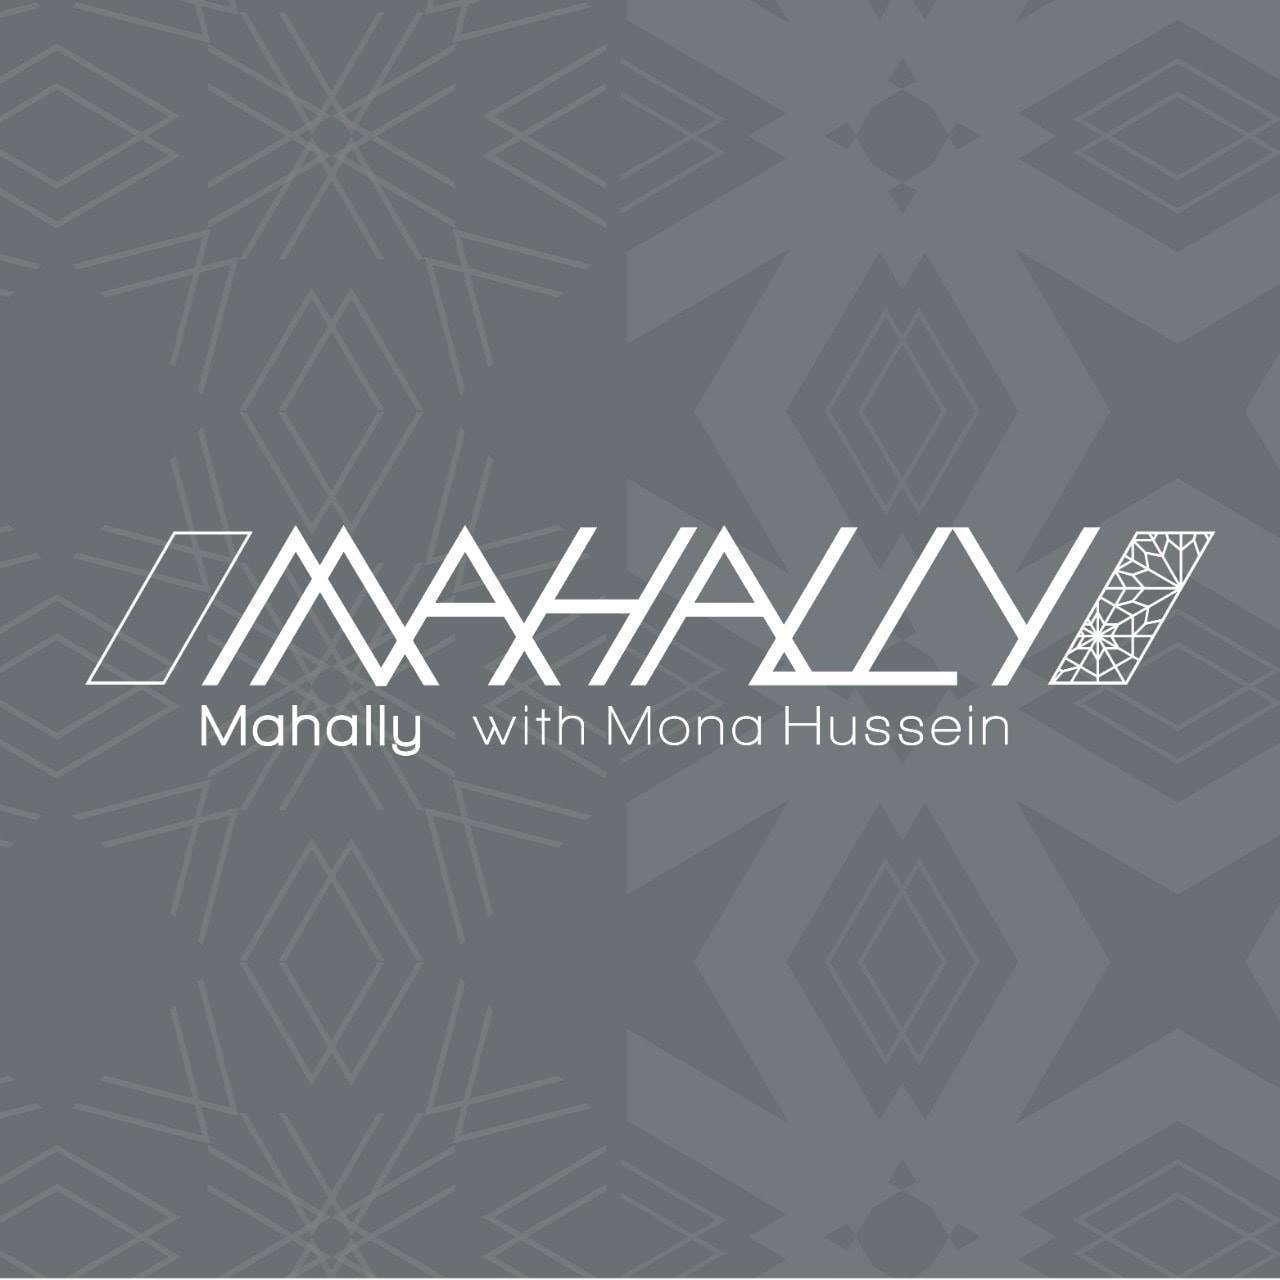 Mahally - Mona Hussein - logo